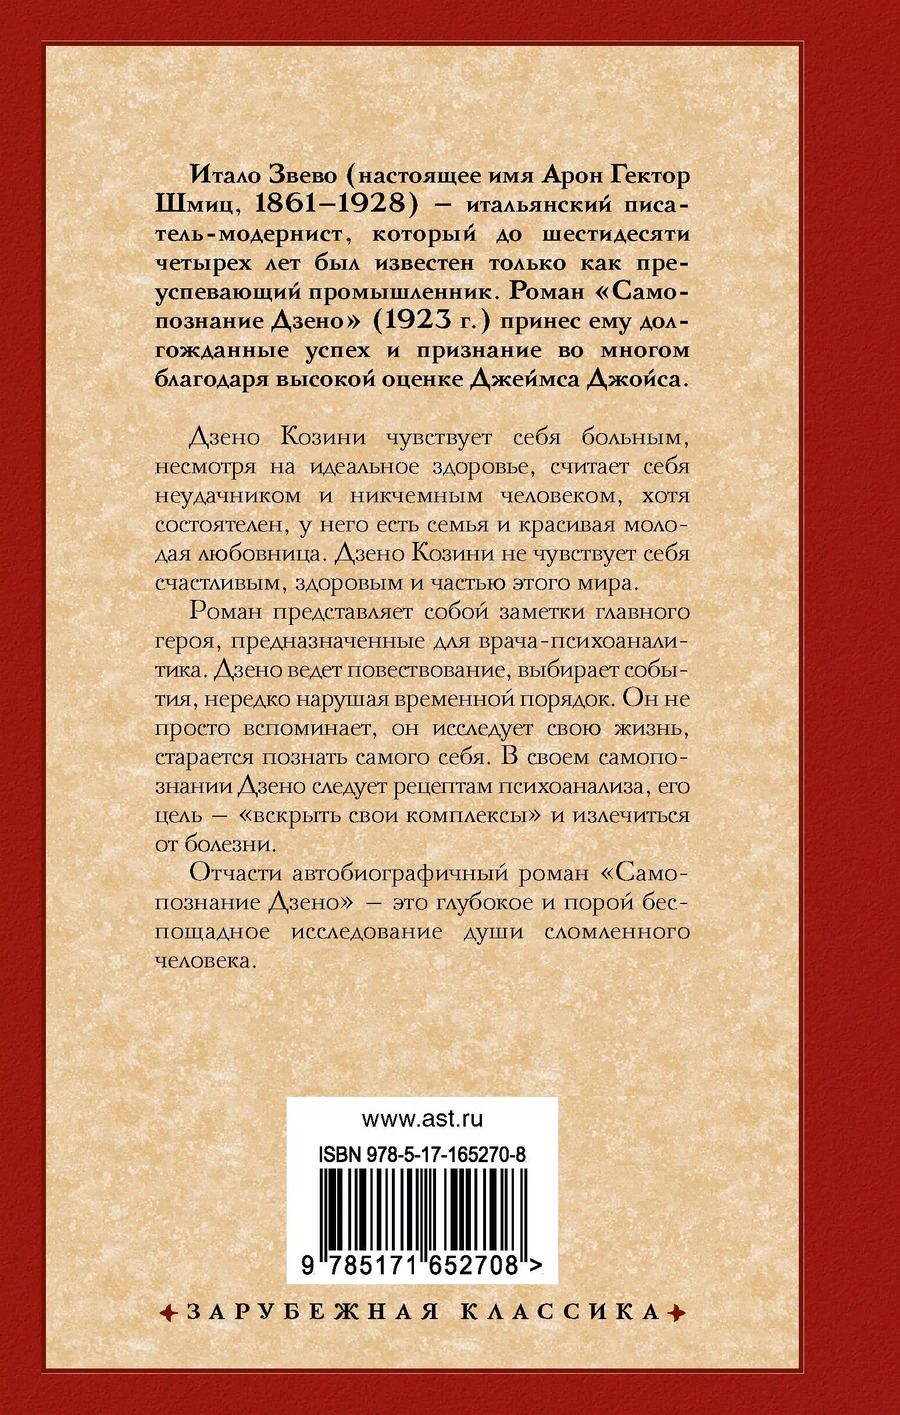 Обложка книги "Самопознание Дзено"